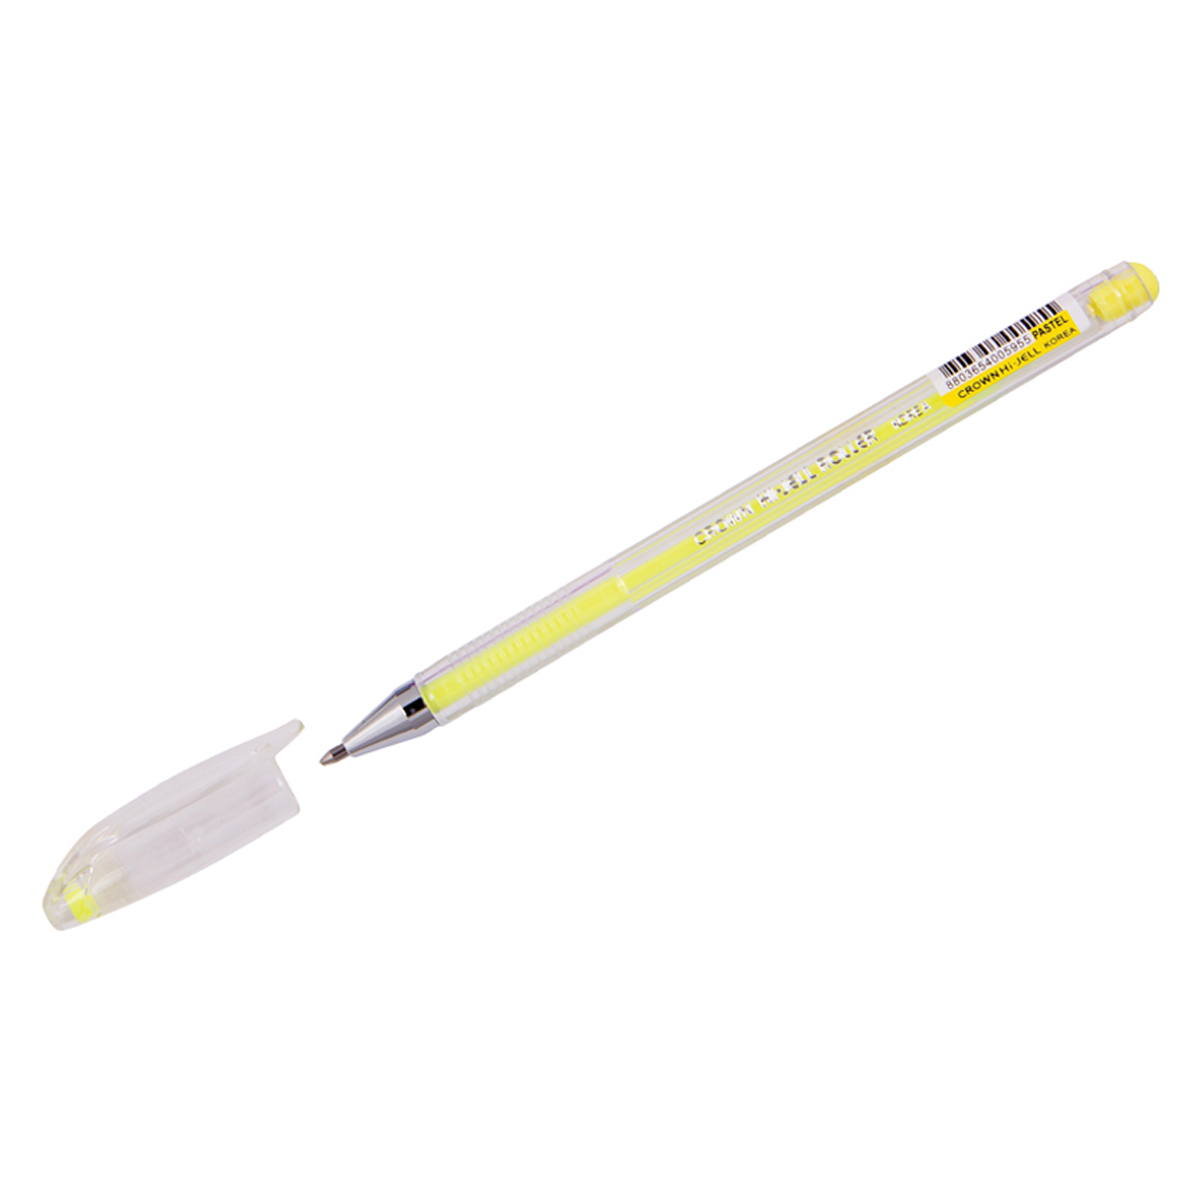 Ручка гелевая Crown "Hi-Jell Pastel" желтая пастель, 0,8мм